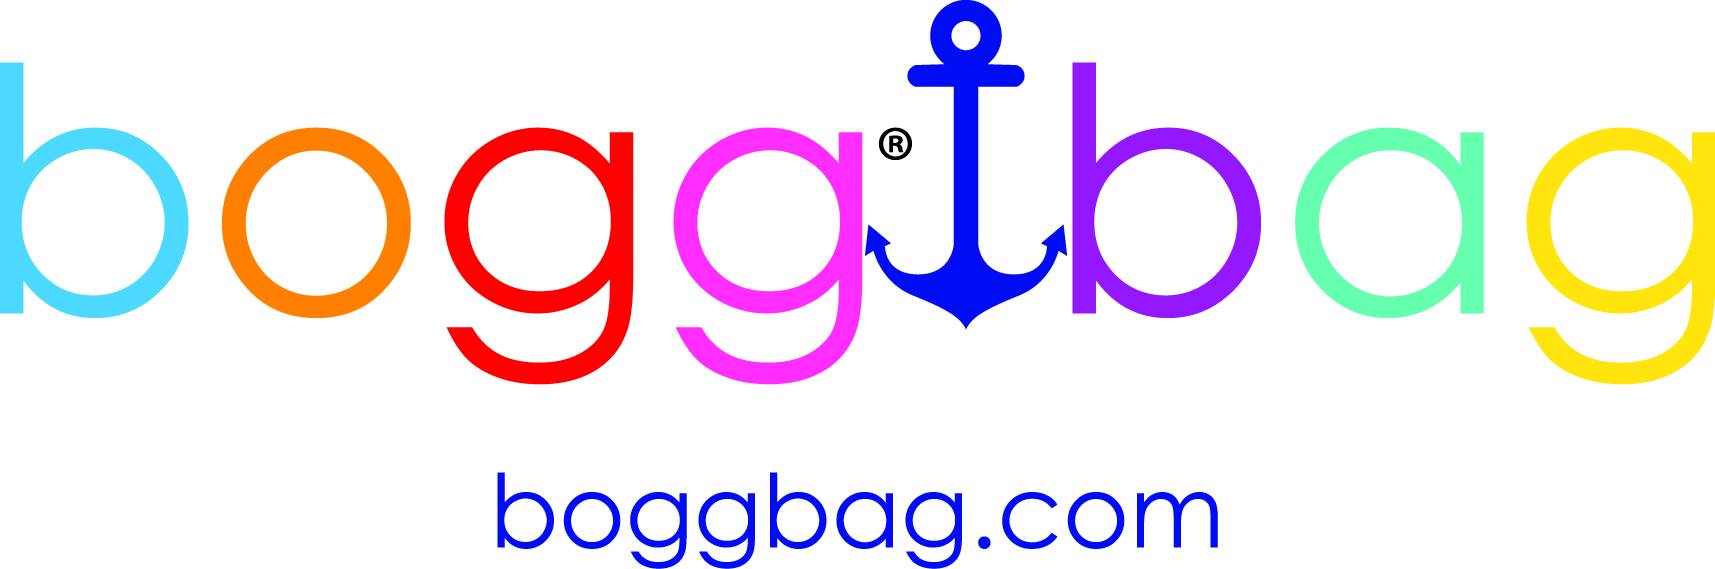 boggbag_logo